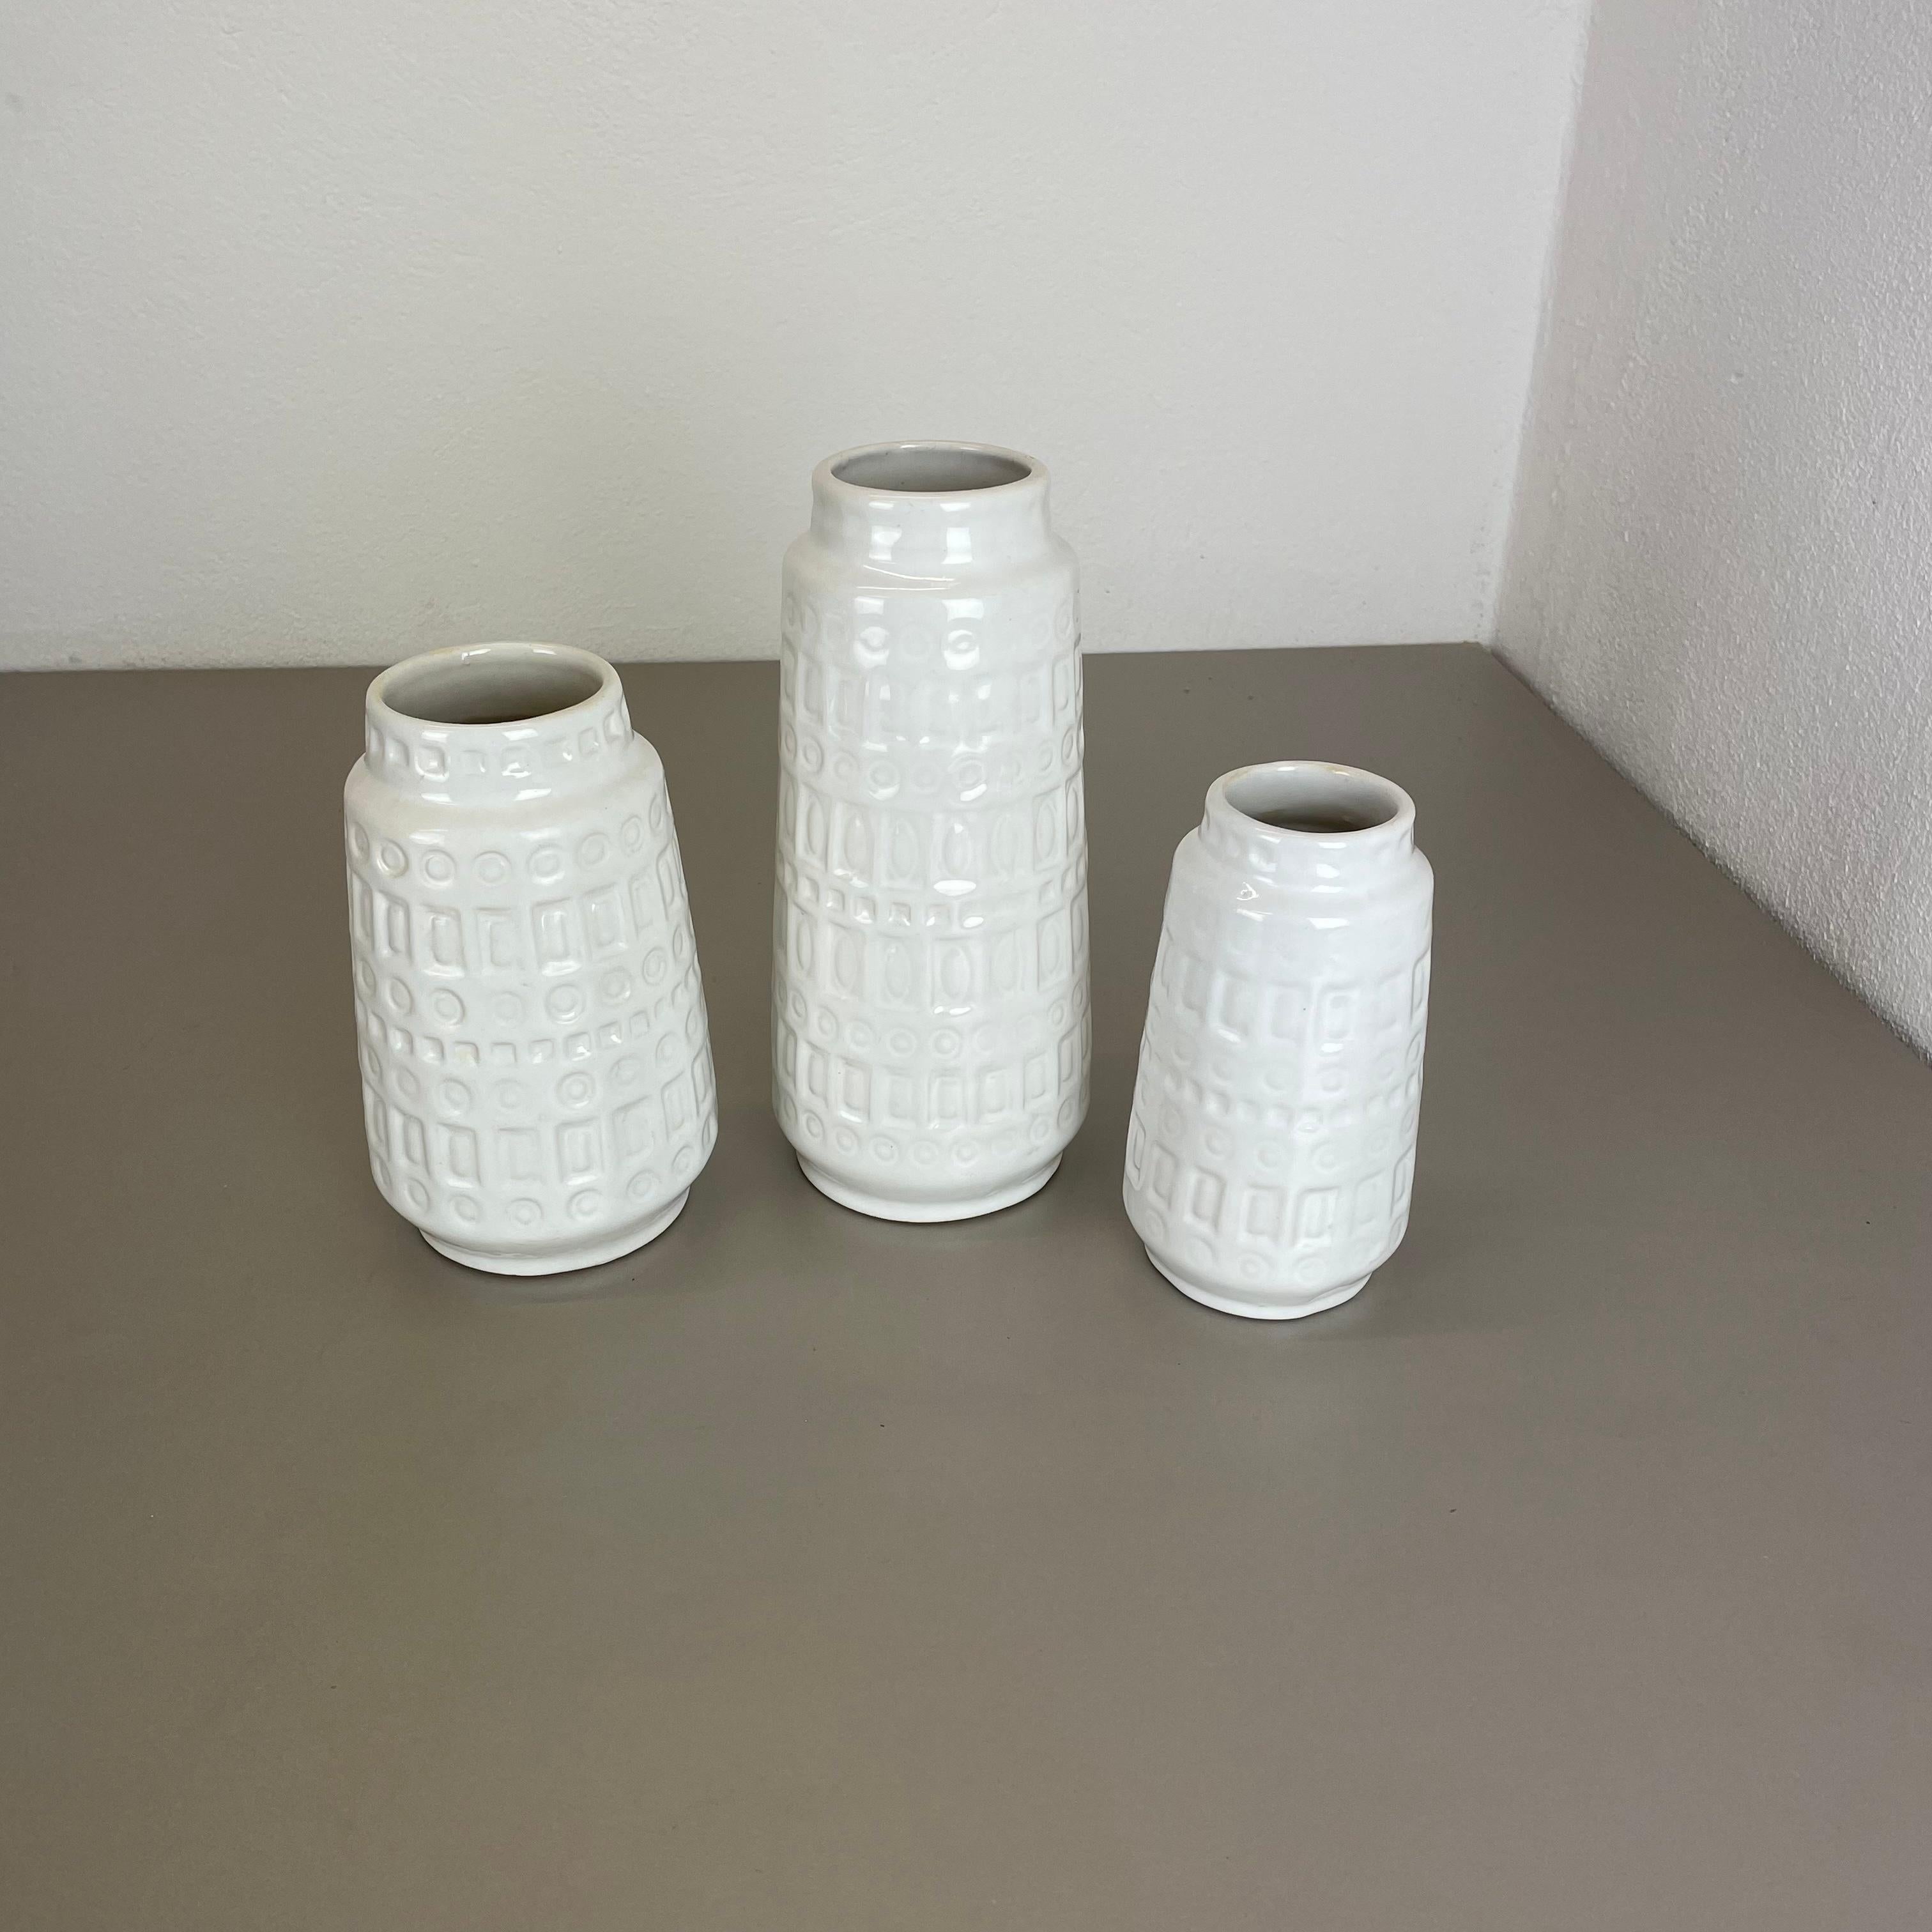 Artikel:

Satz von drei fetten Lavakunstvasen


Produzent:

Scheurich, Deutschland



Jahrzehnt:

1970s


Diese originalen Vintage-Vasen wurden in den 1970er Jahren in Deutschland hergestellt. Sie ist aus Keramik in fetter Lava-Optik gefertigt.